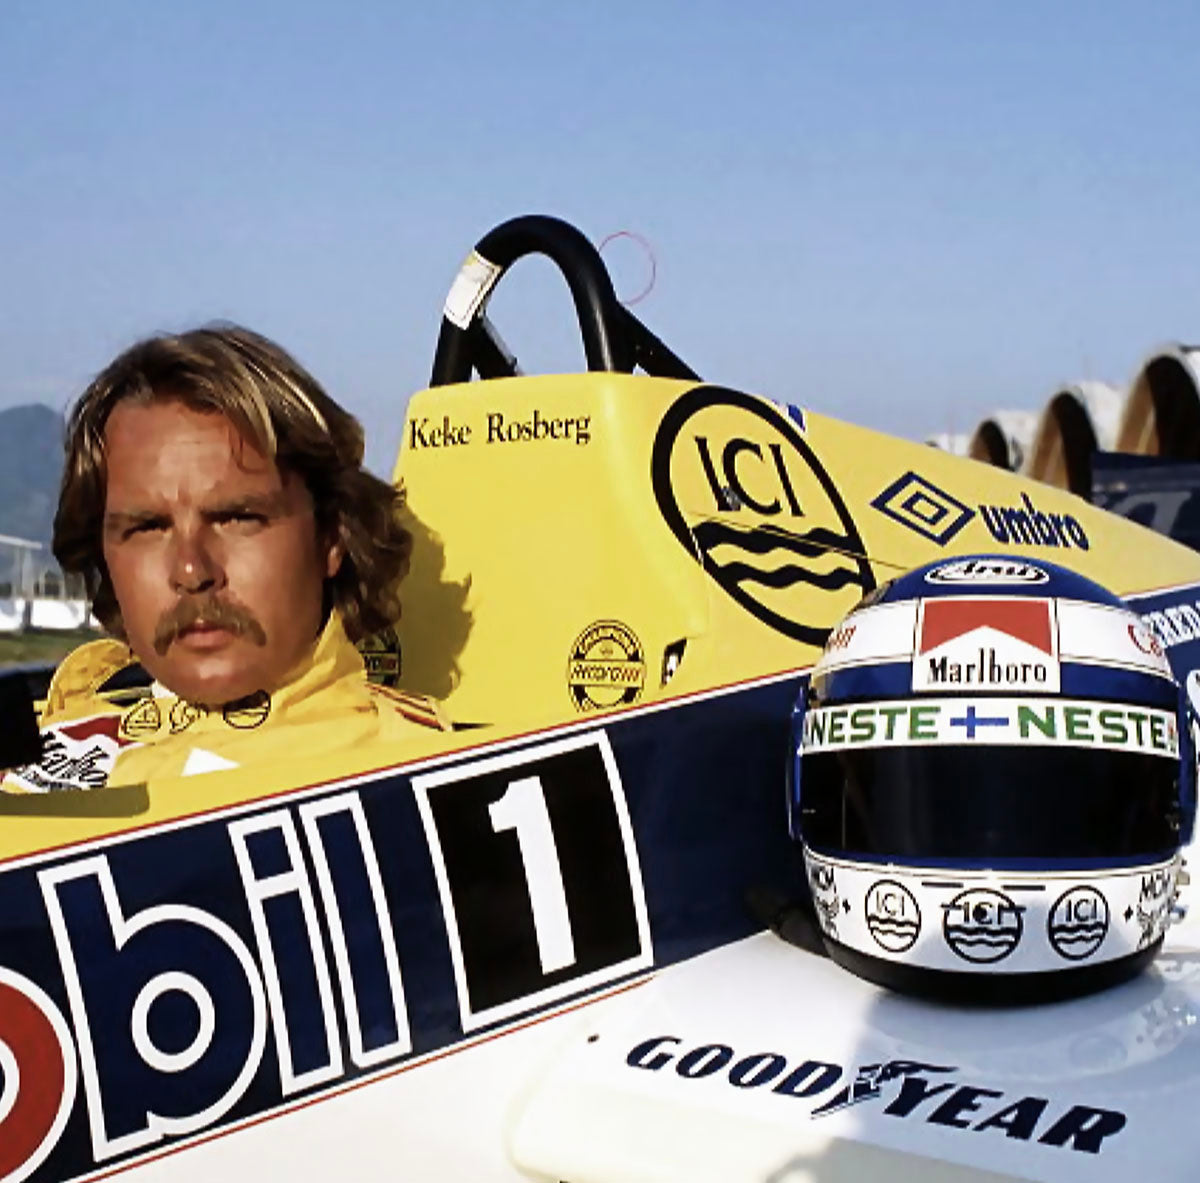 1985 Keke Rosberg Race Used Williams Racing F1 Visor